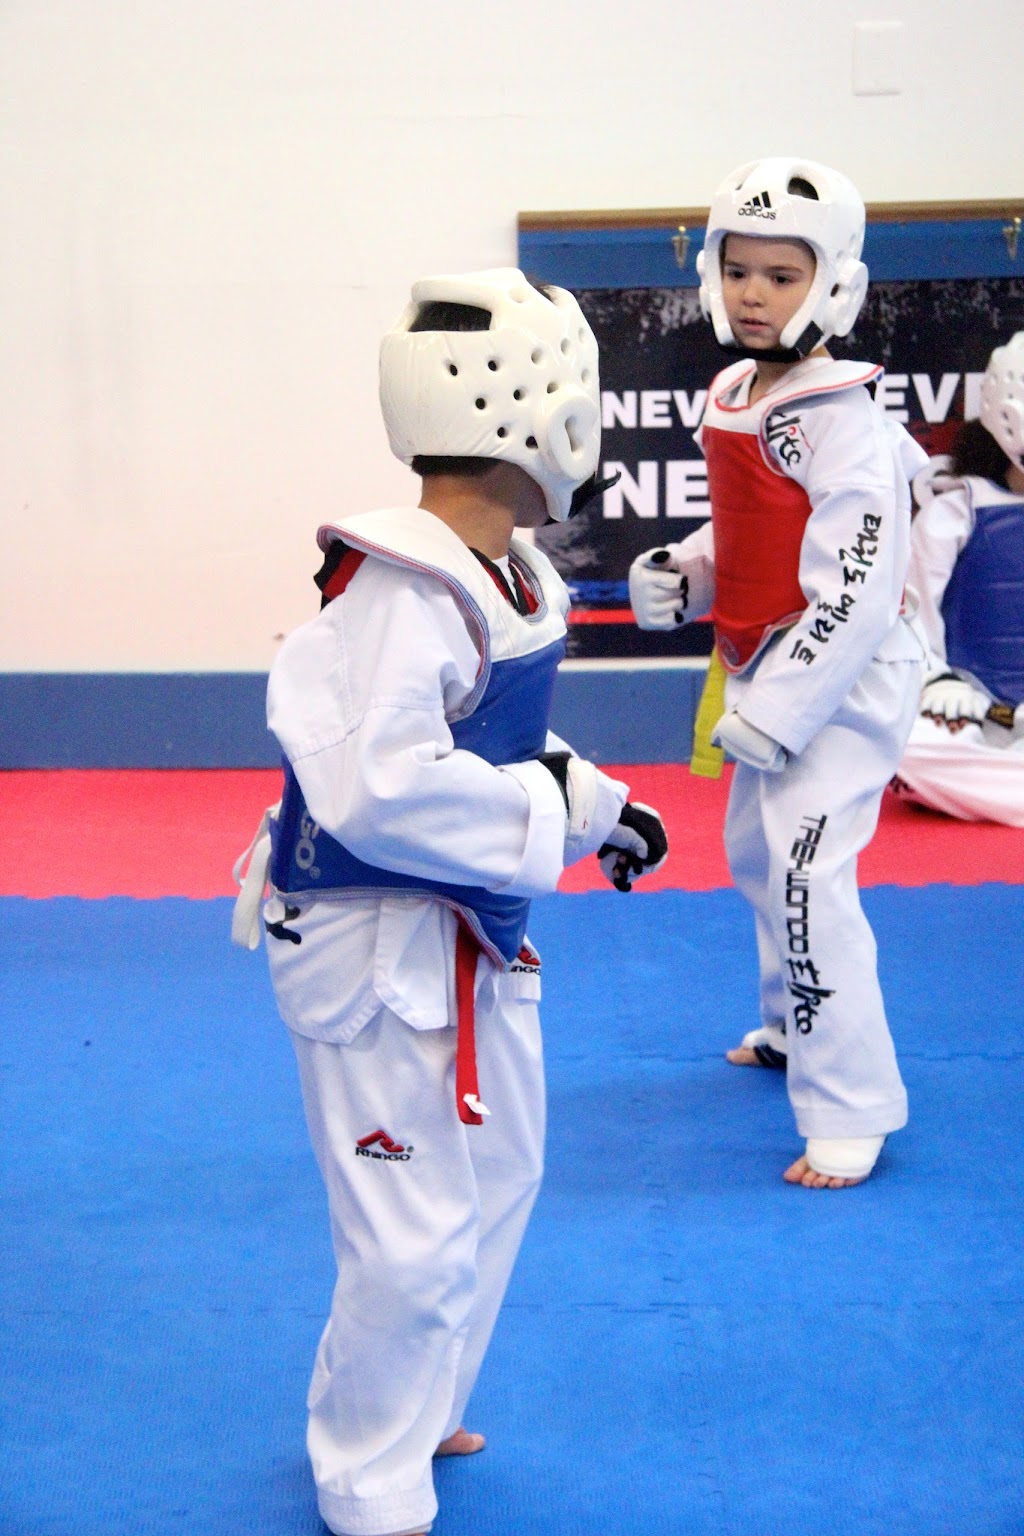 Taekwondo Elite | 670 Towne Center Dr, North Brunswick Township, NJ 08902 | Phone: (732) 940-2323